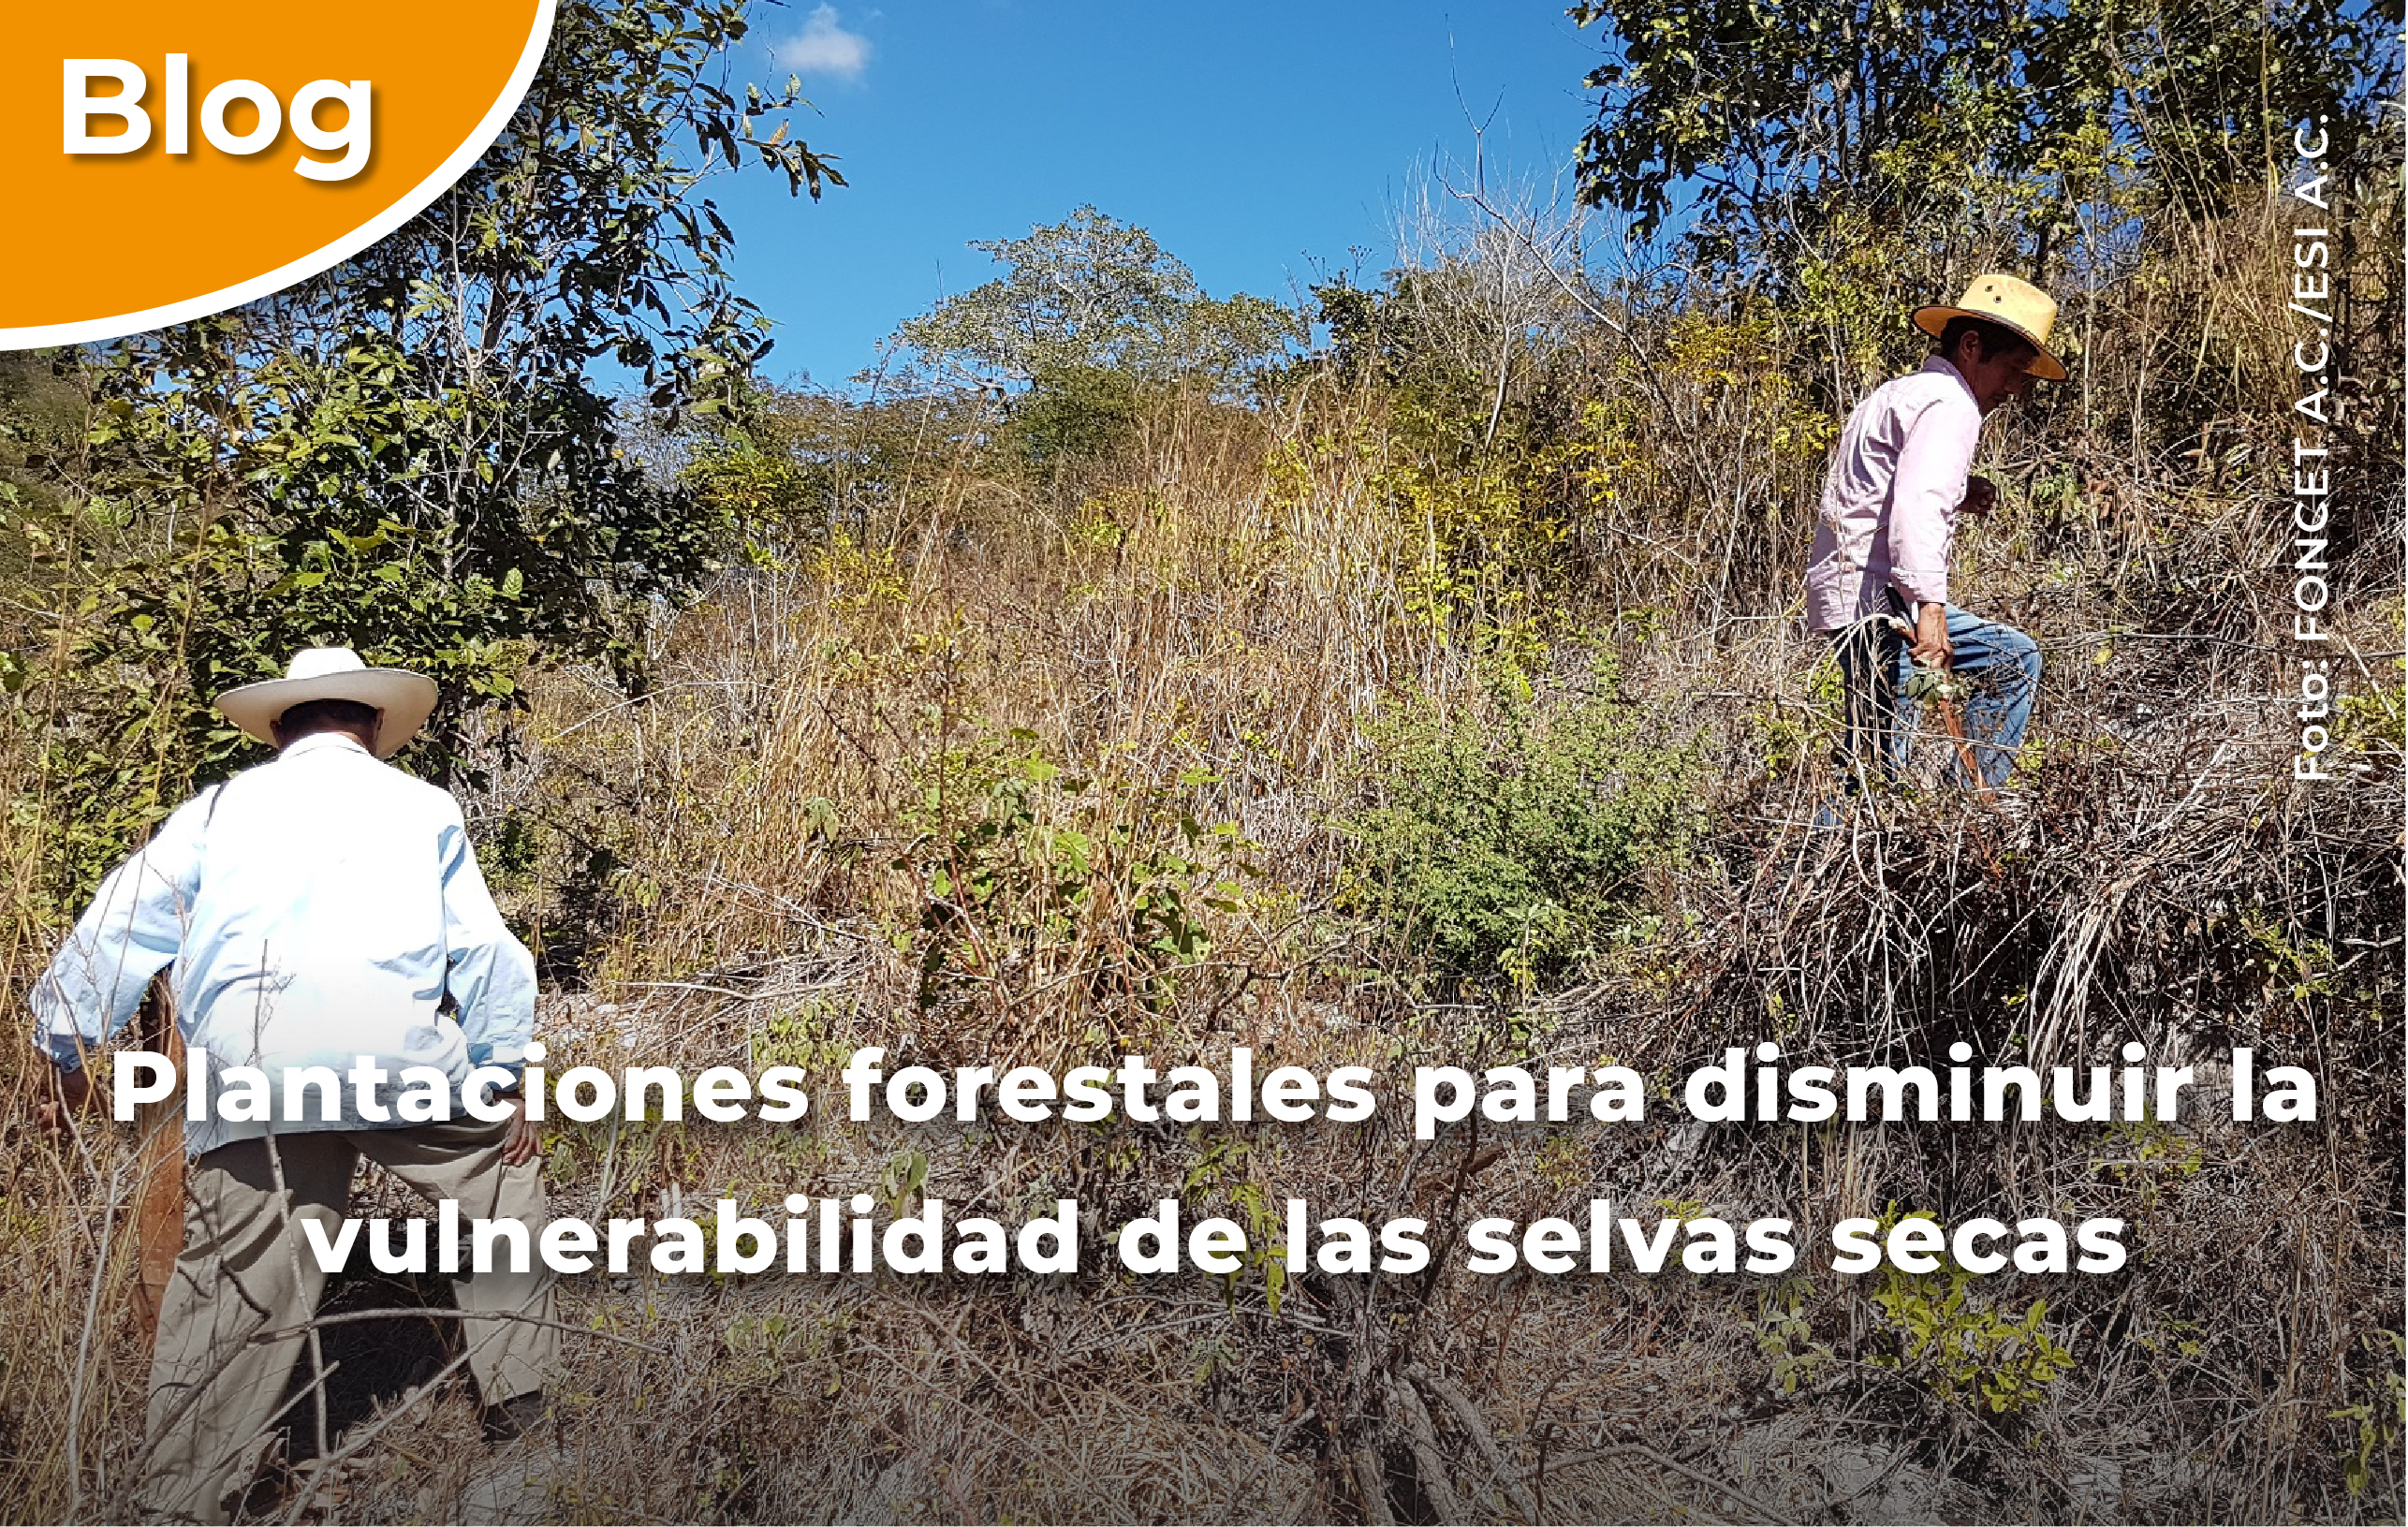 Plantaciones forestales para disminuir la vulnerabilidad de las selvas secas.